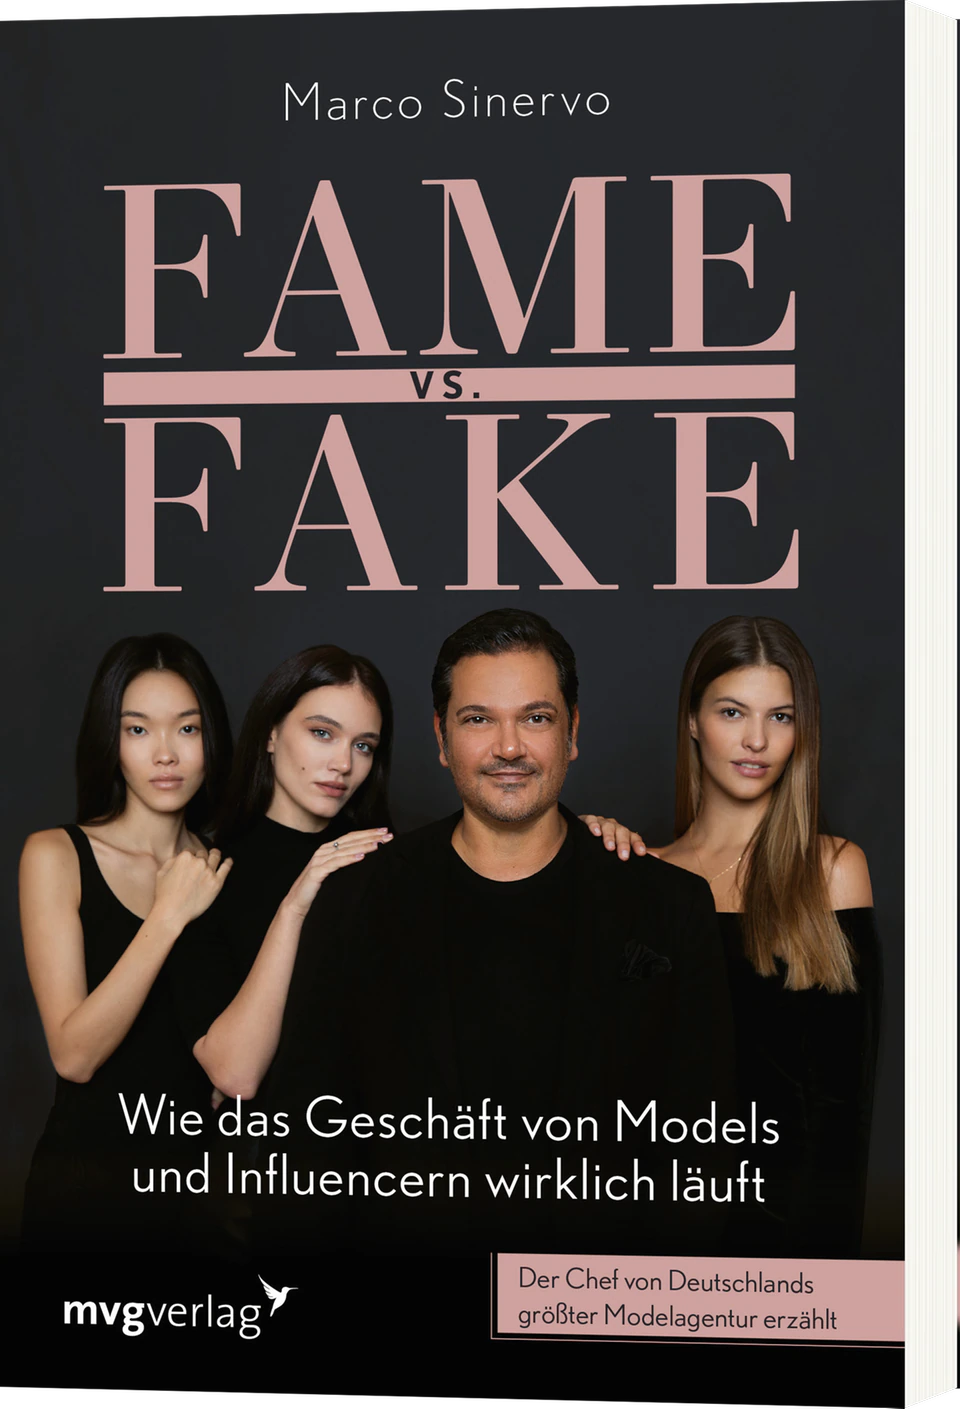 Marco Sinervo  "Fame vs. Fake. Wie das Geschäft von Models und Influencern wirklich läuft"  224 Seiten  17 Euro  ISBN: 978-3-7474-0413-3  mvg Verlag